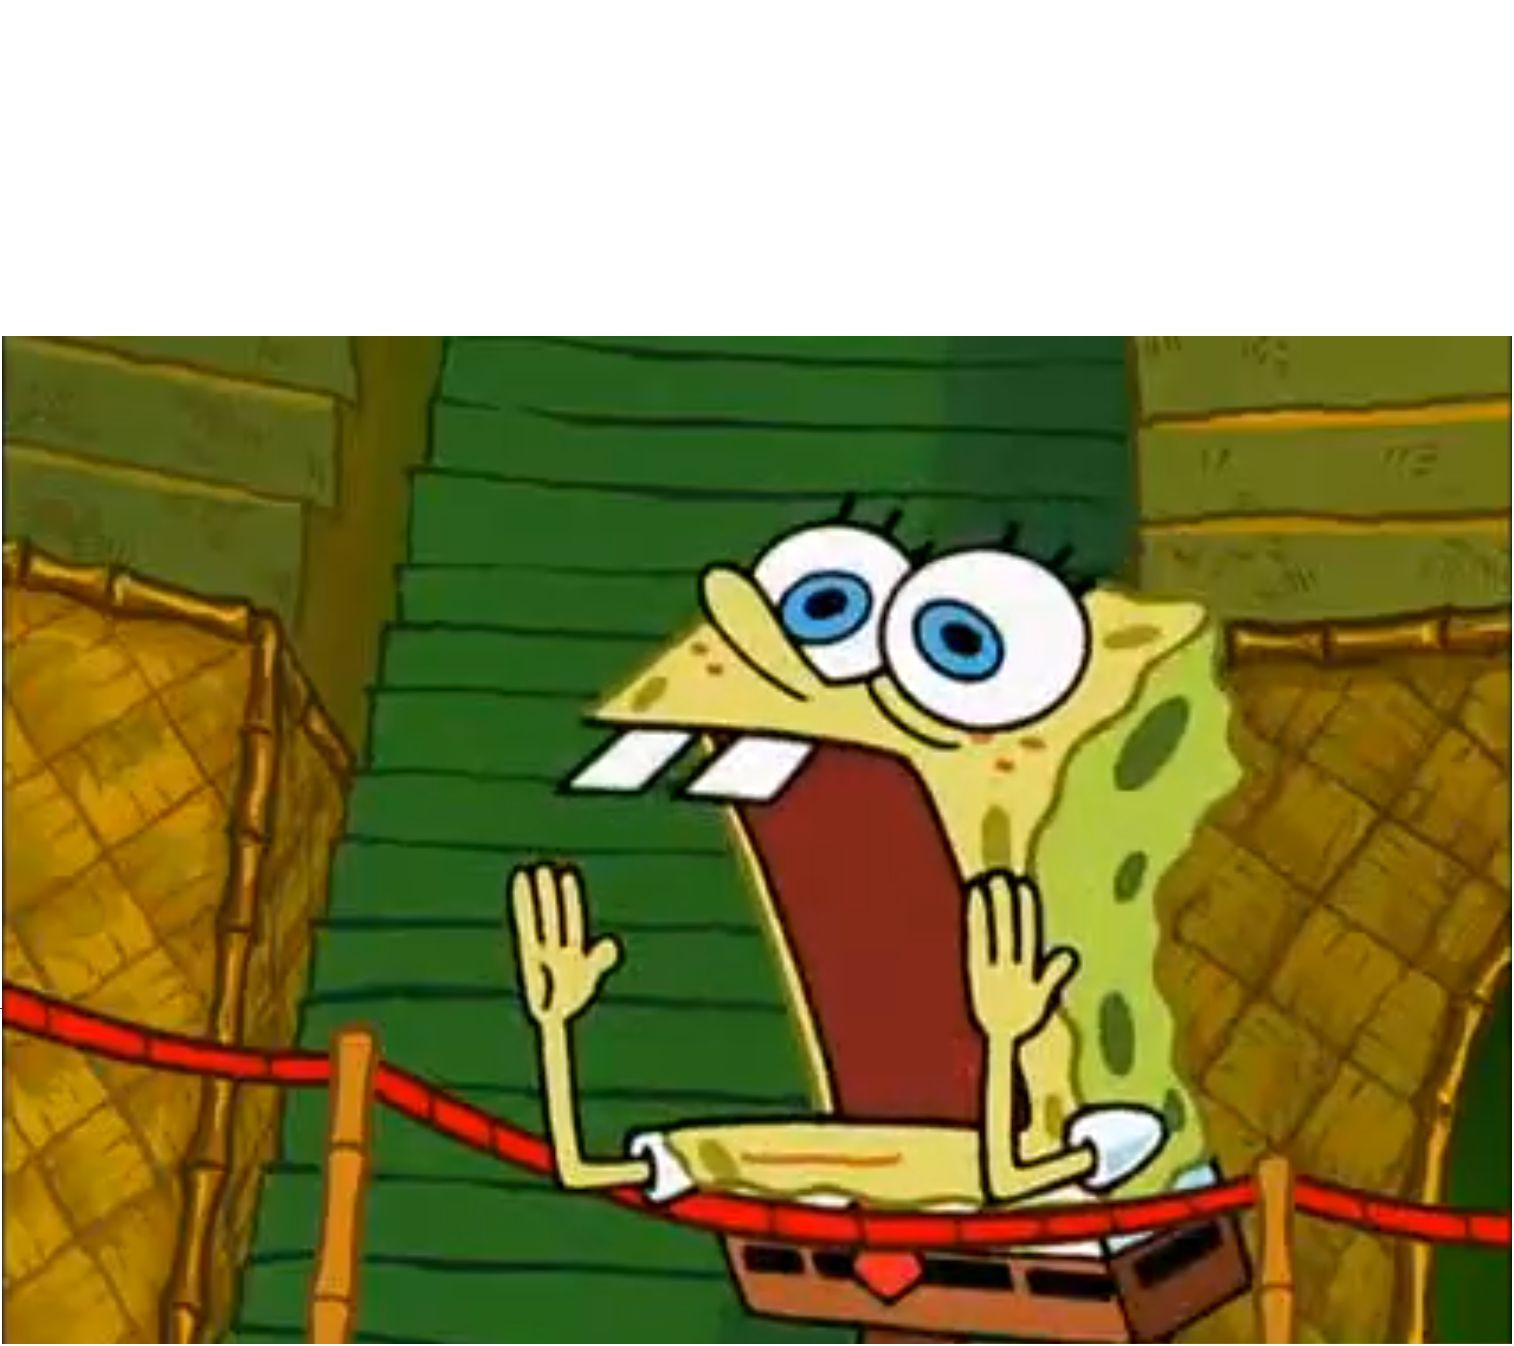 Spongebob screaming Blank Template Imgflip